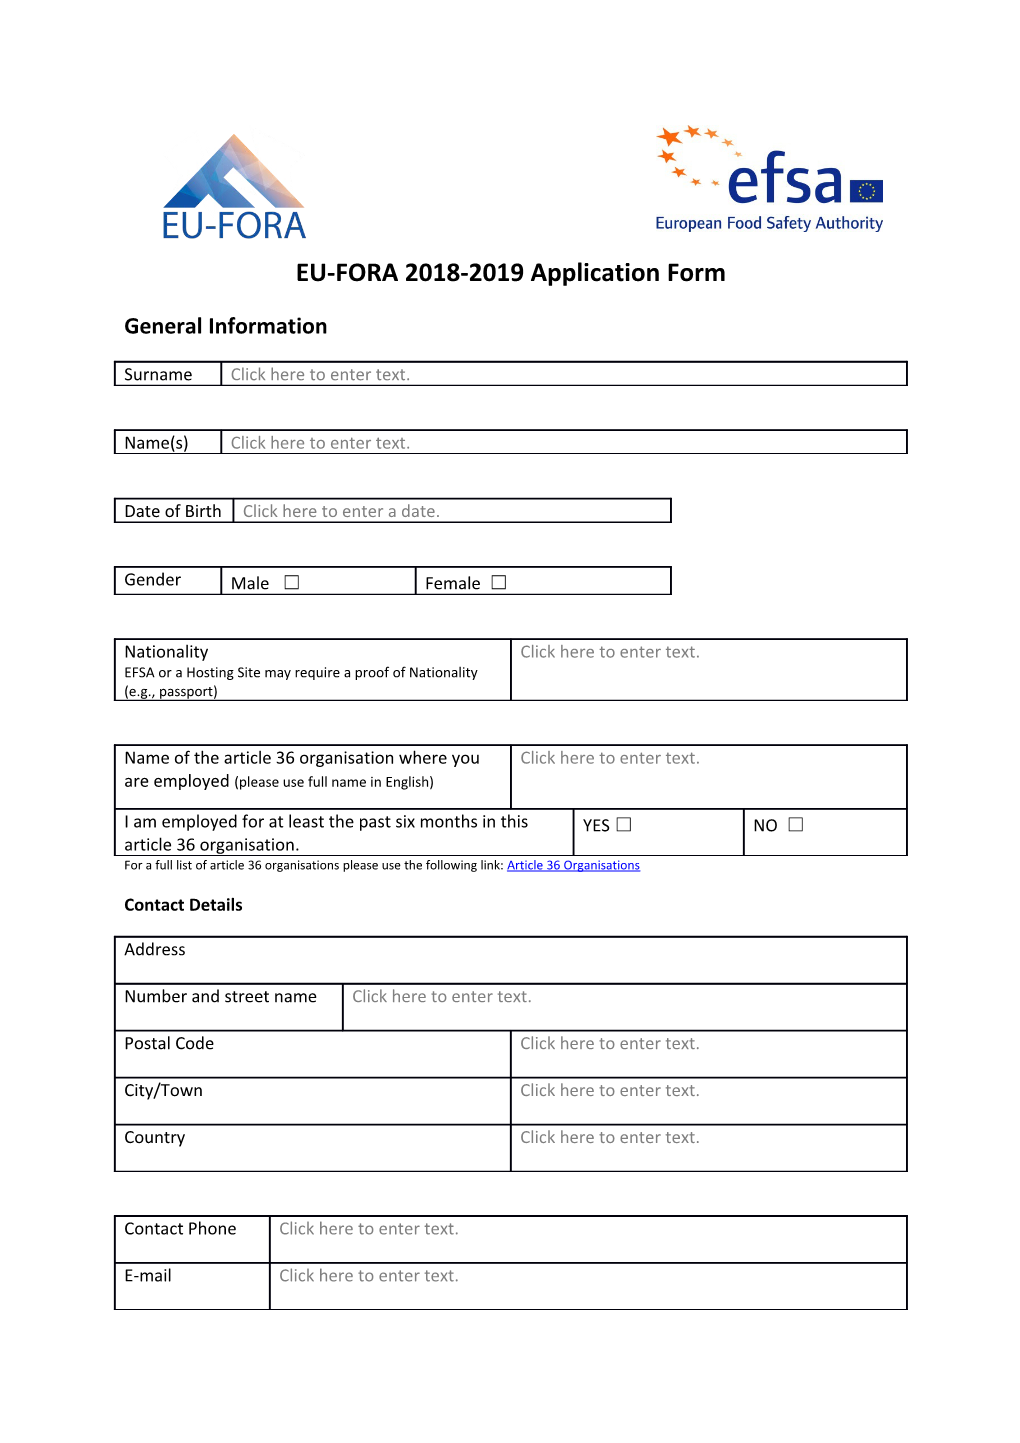 EU-FORA 2018-2019 Application Form